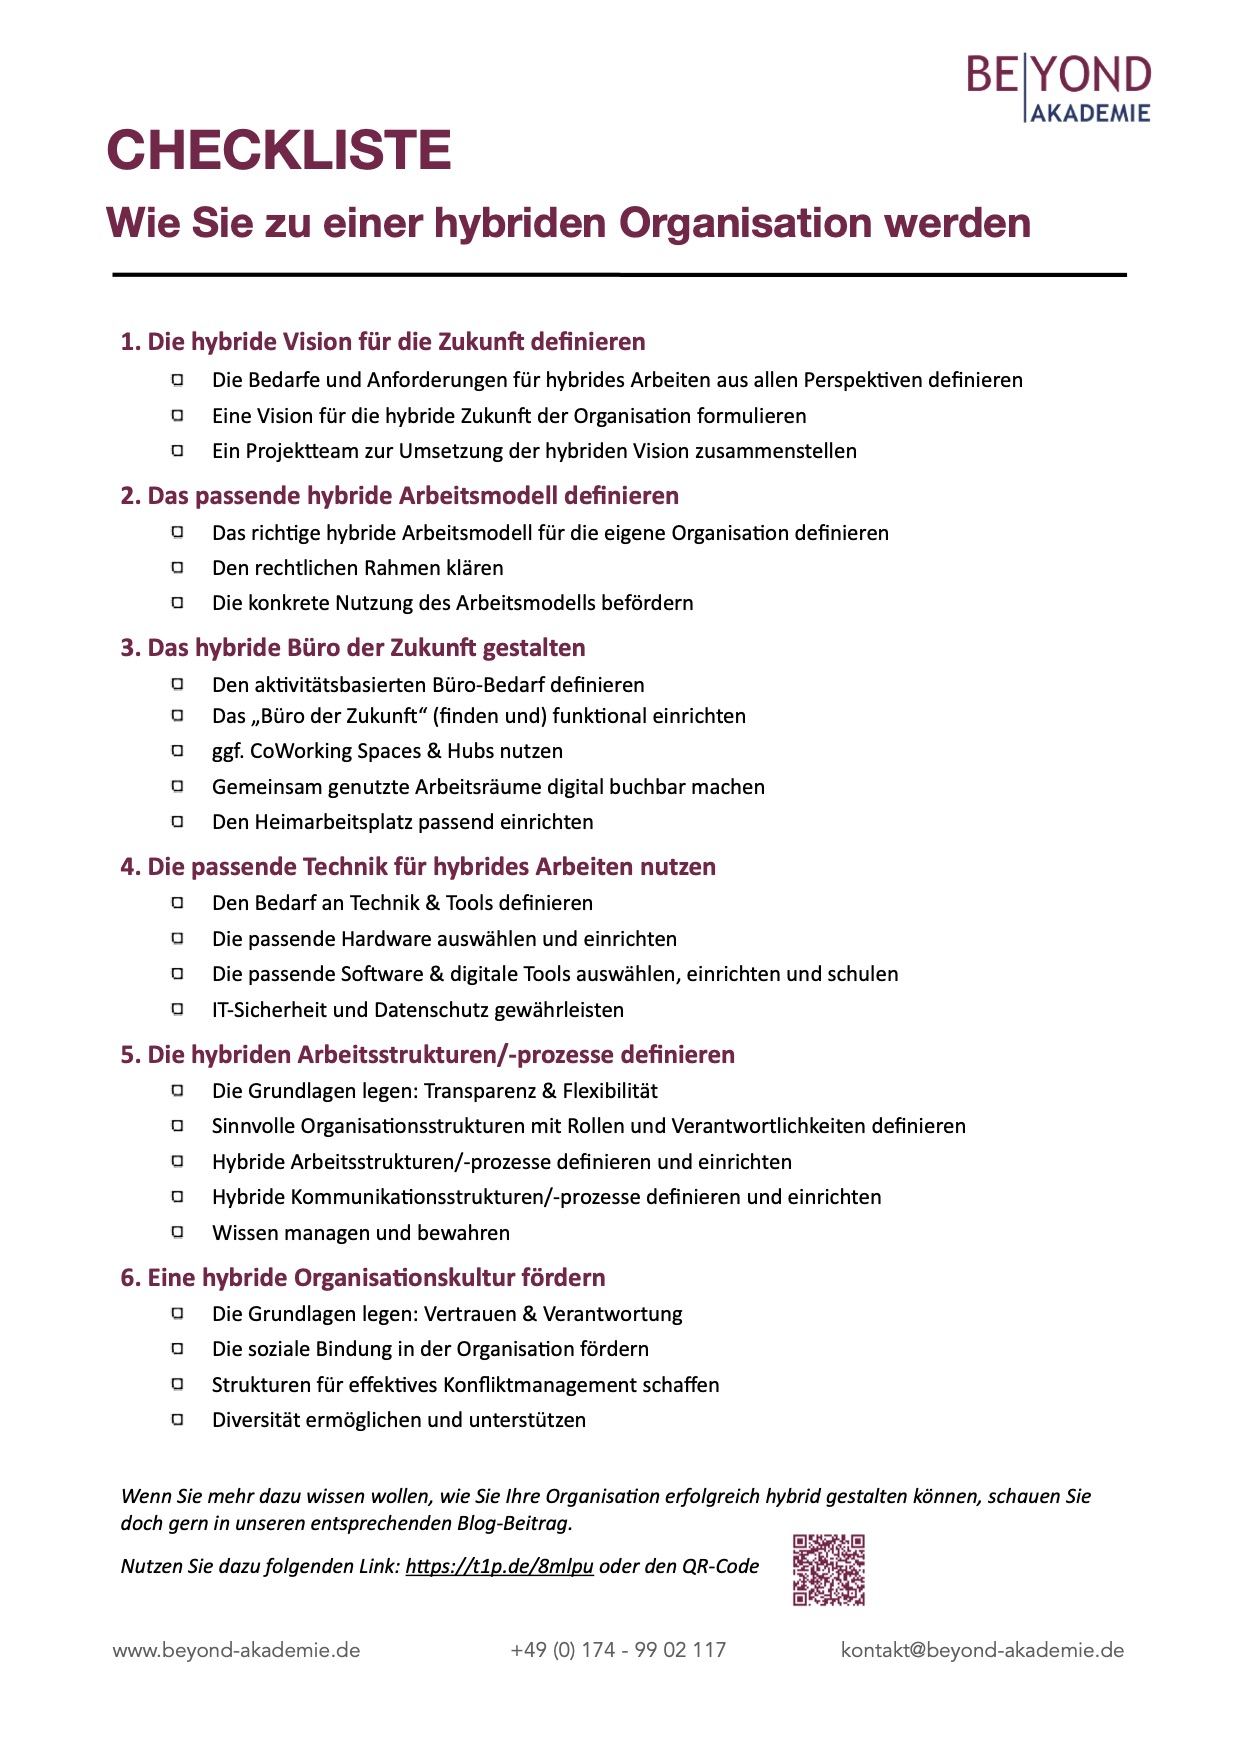 BEYOND Akademie - Checkliste - Zur hybriden Organisation werden